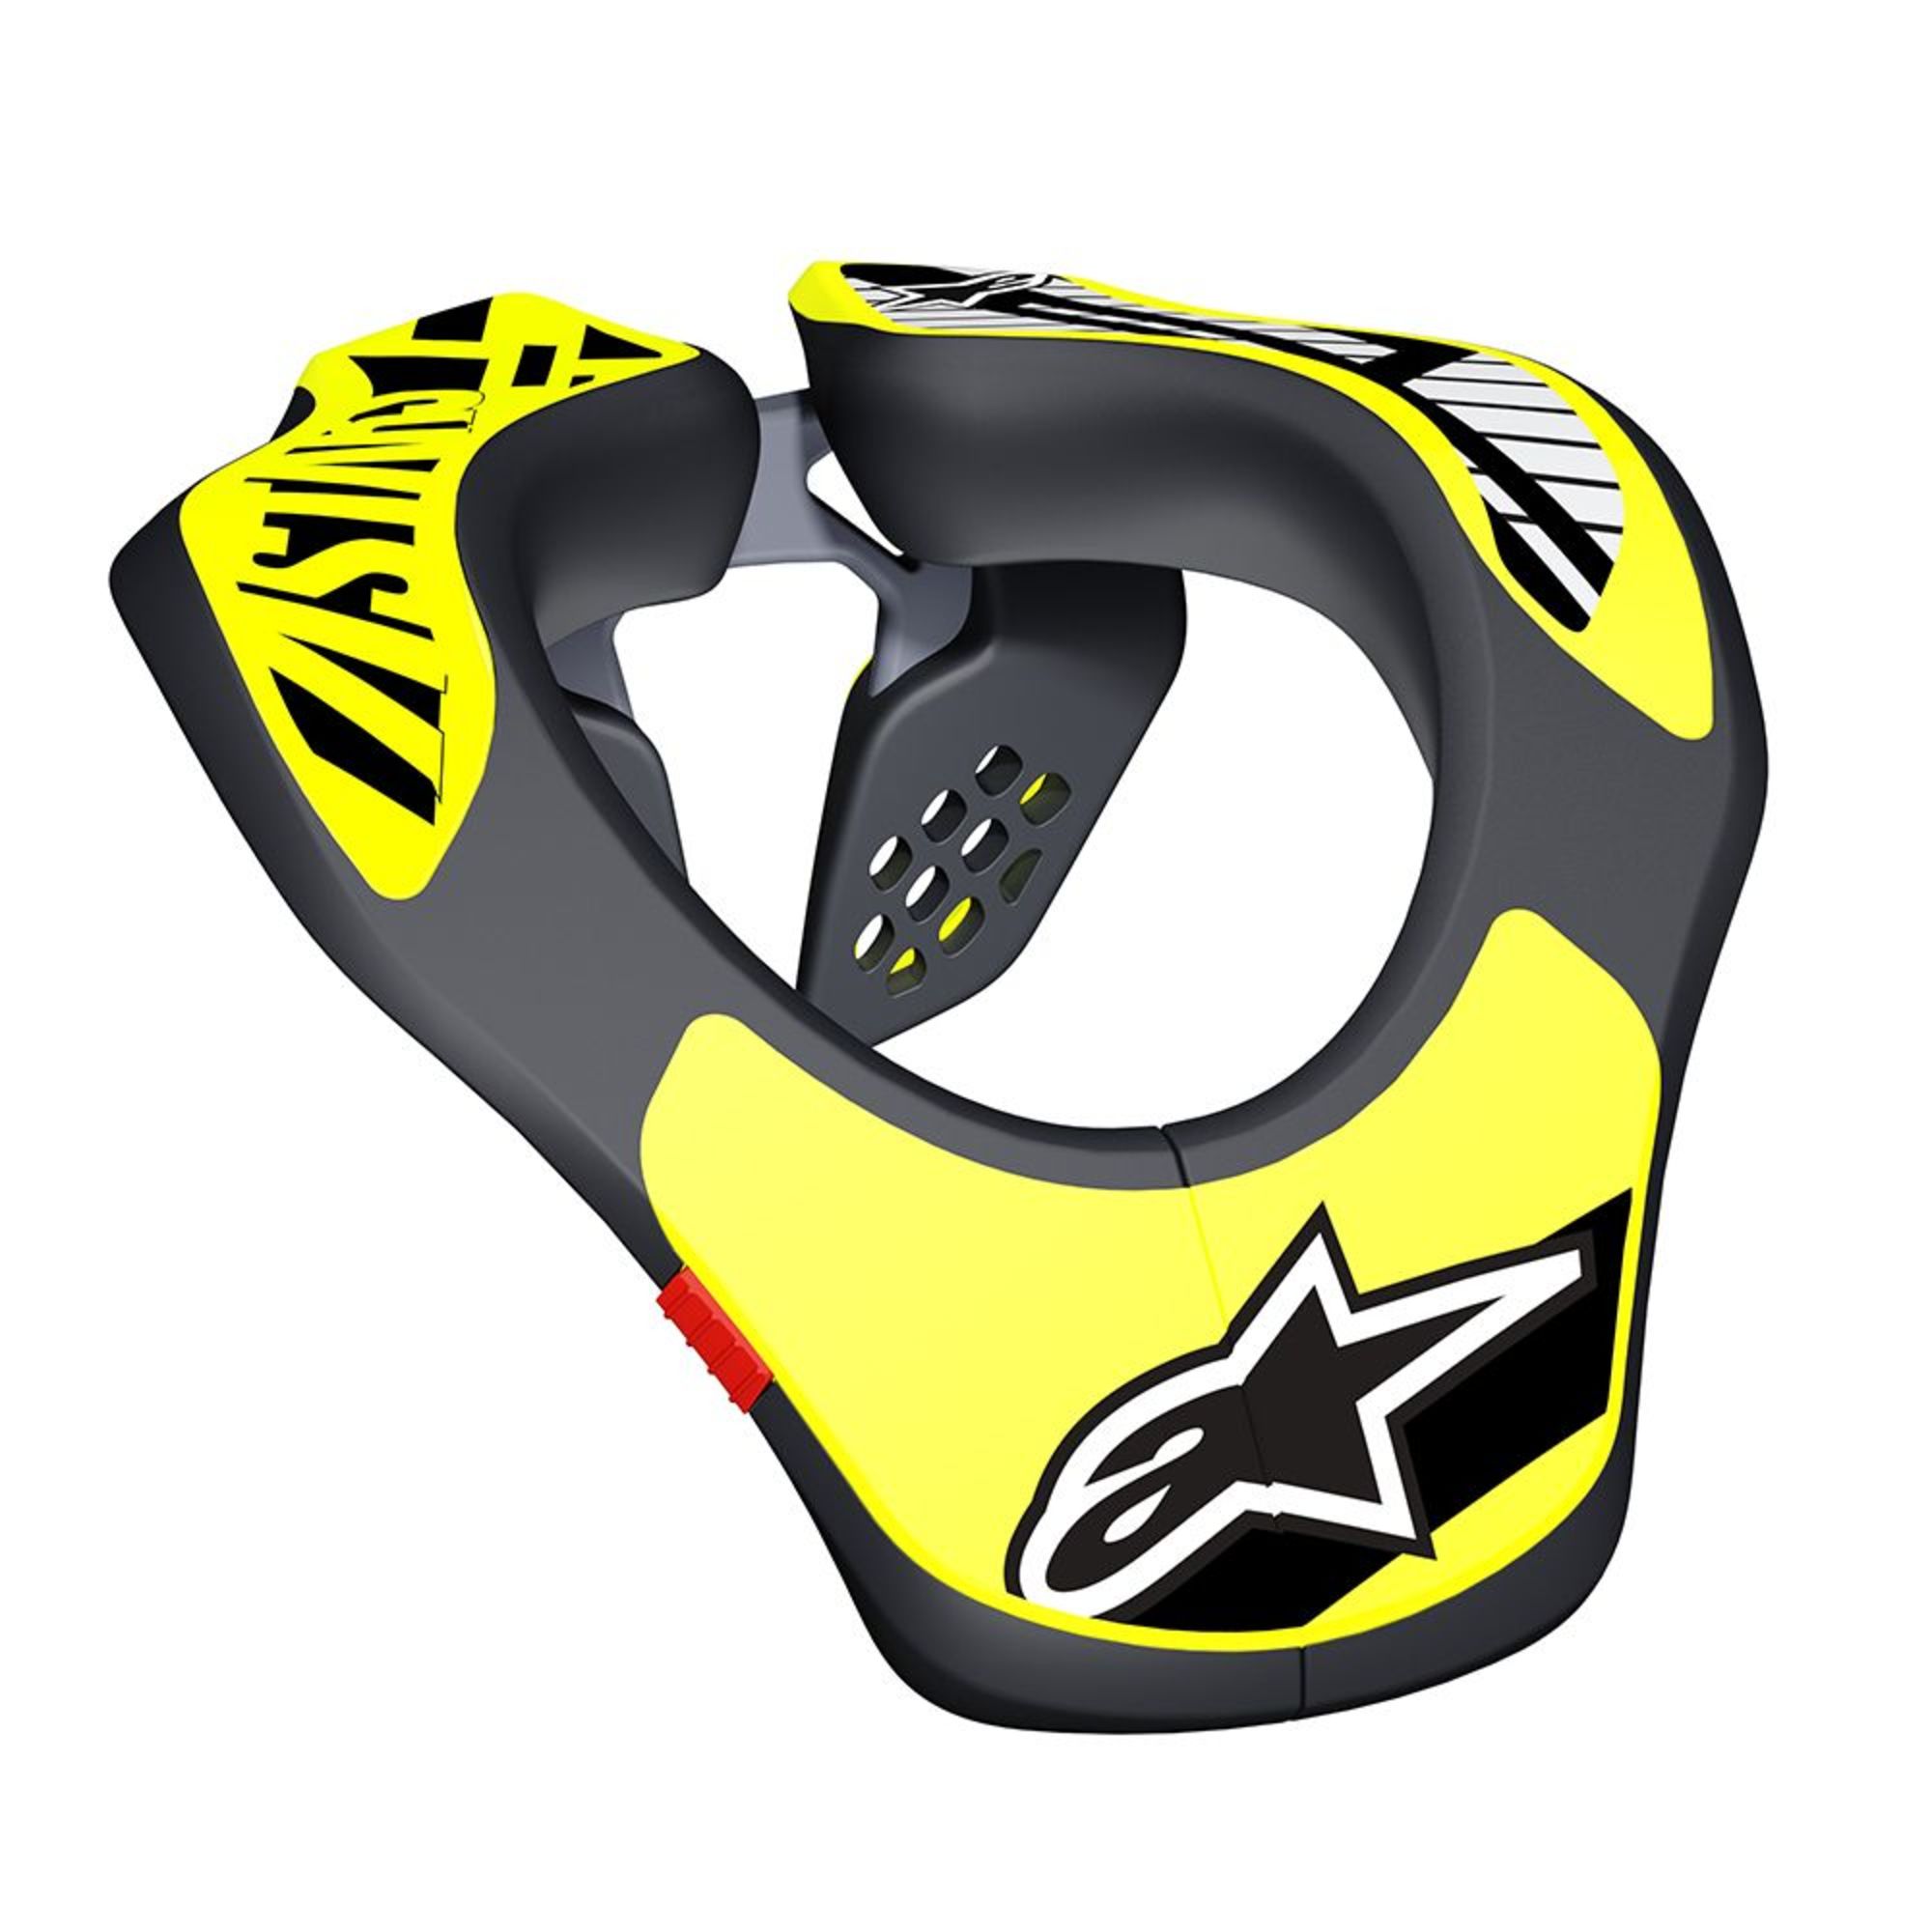 motocross protections protège-cou par alpinestars pour enfants boinic tech 2 neck brace